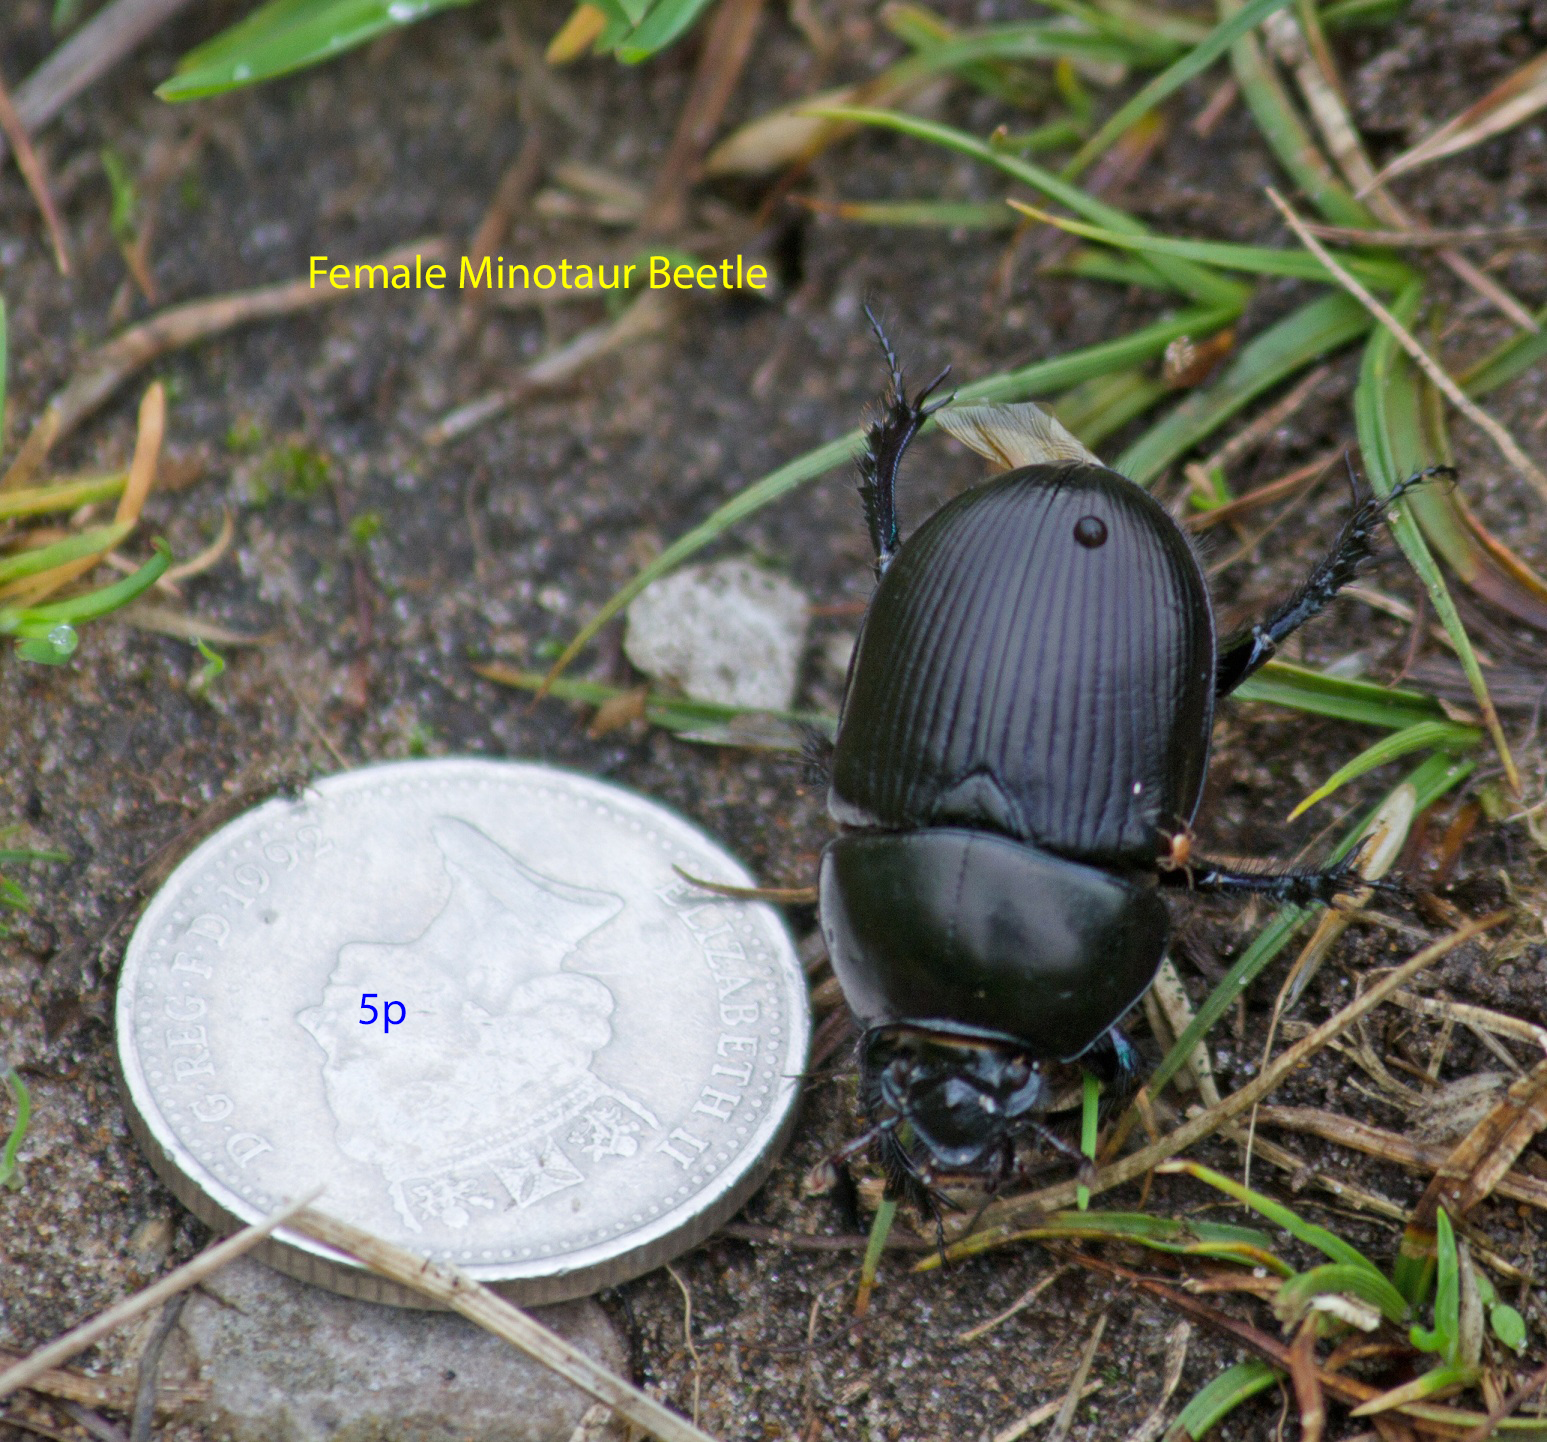 003-female-minotaur-beetle1-1-1ed31b60cf0b0d0da17ba295bafcc880a961fb59